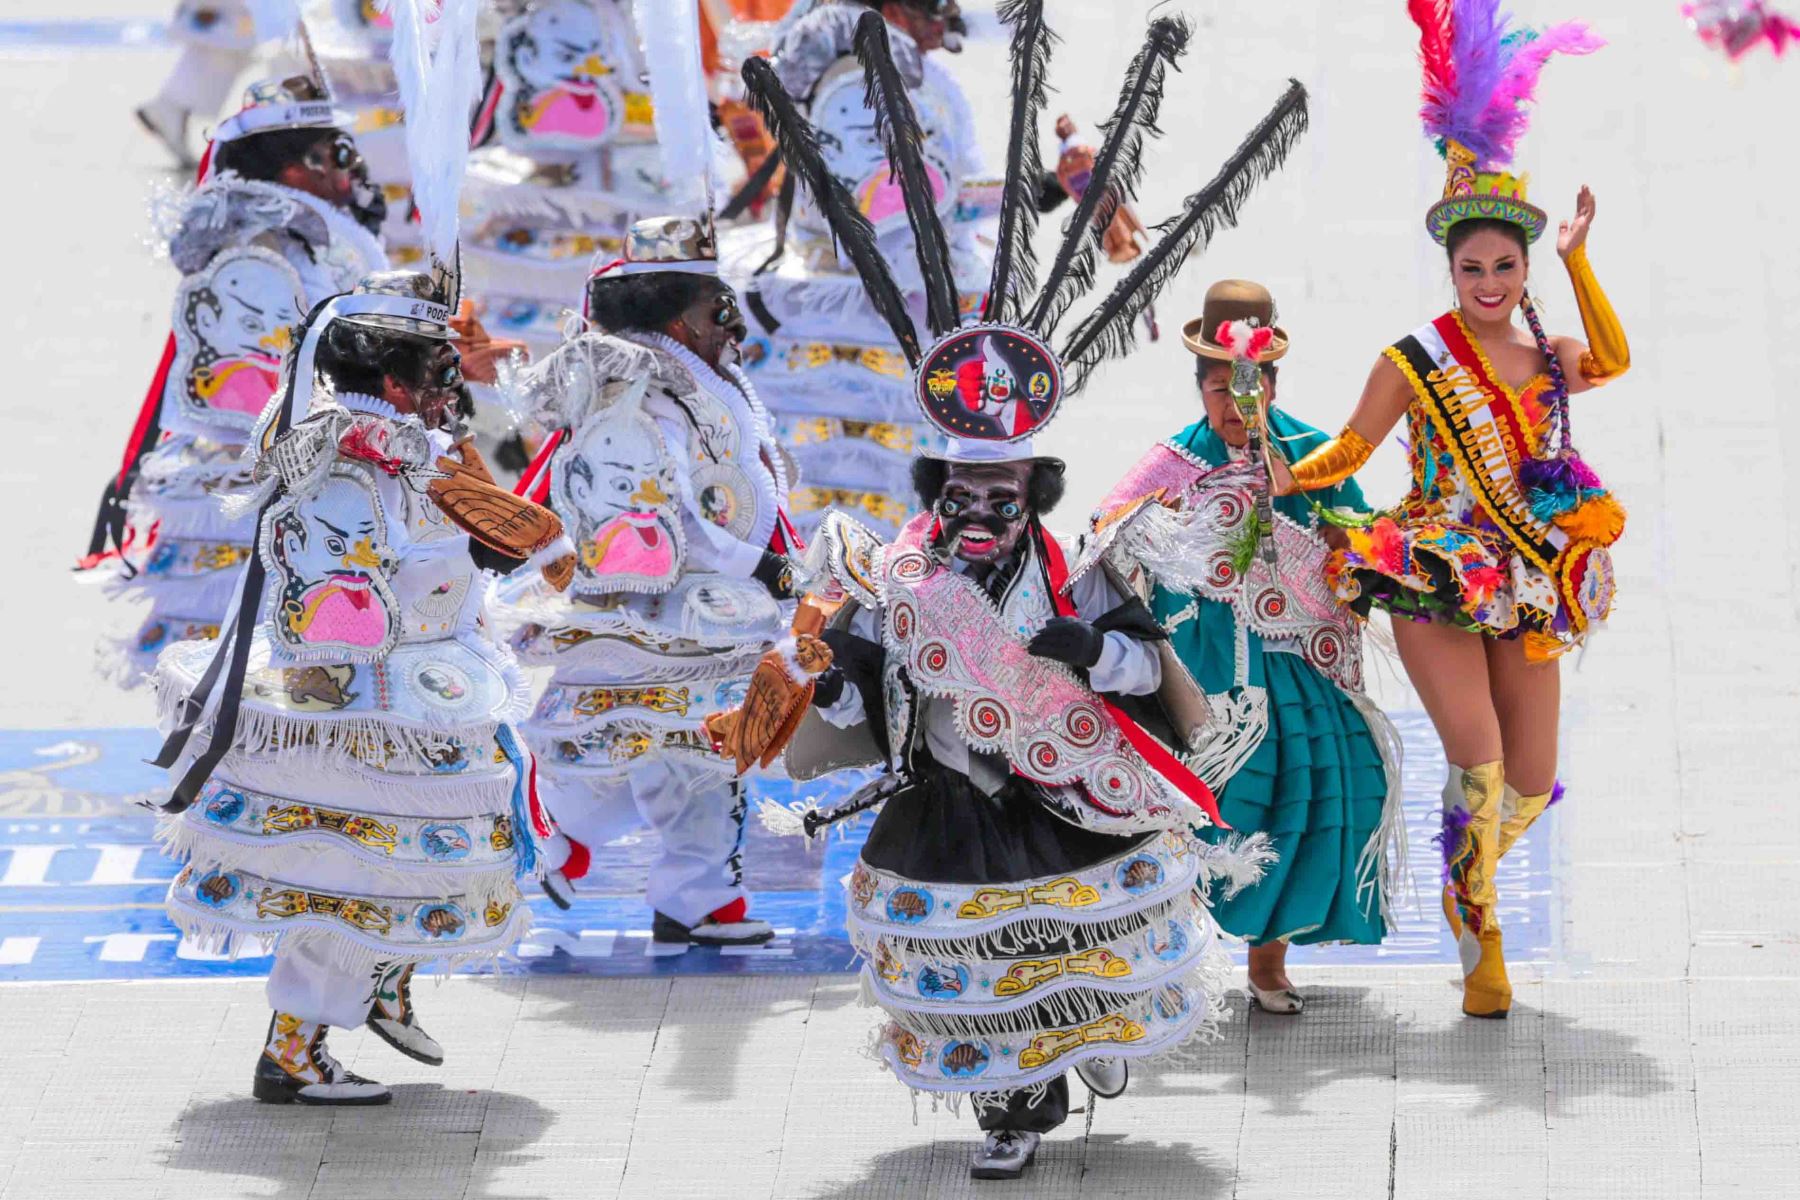 Por su imponente colorido y fastuosidad, los concursos de danzas y el desfile de comparsas, son el aspecto de la Festividad de la Virgen de la Candelaria que más atracción turística genera y evidencia porque Puno es catalogada, con justicia, la “Capital del folclor peruano”. Foto: ANDINA/ Carlos Lezama Villantoy